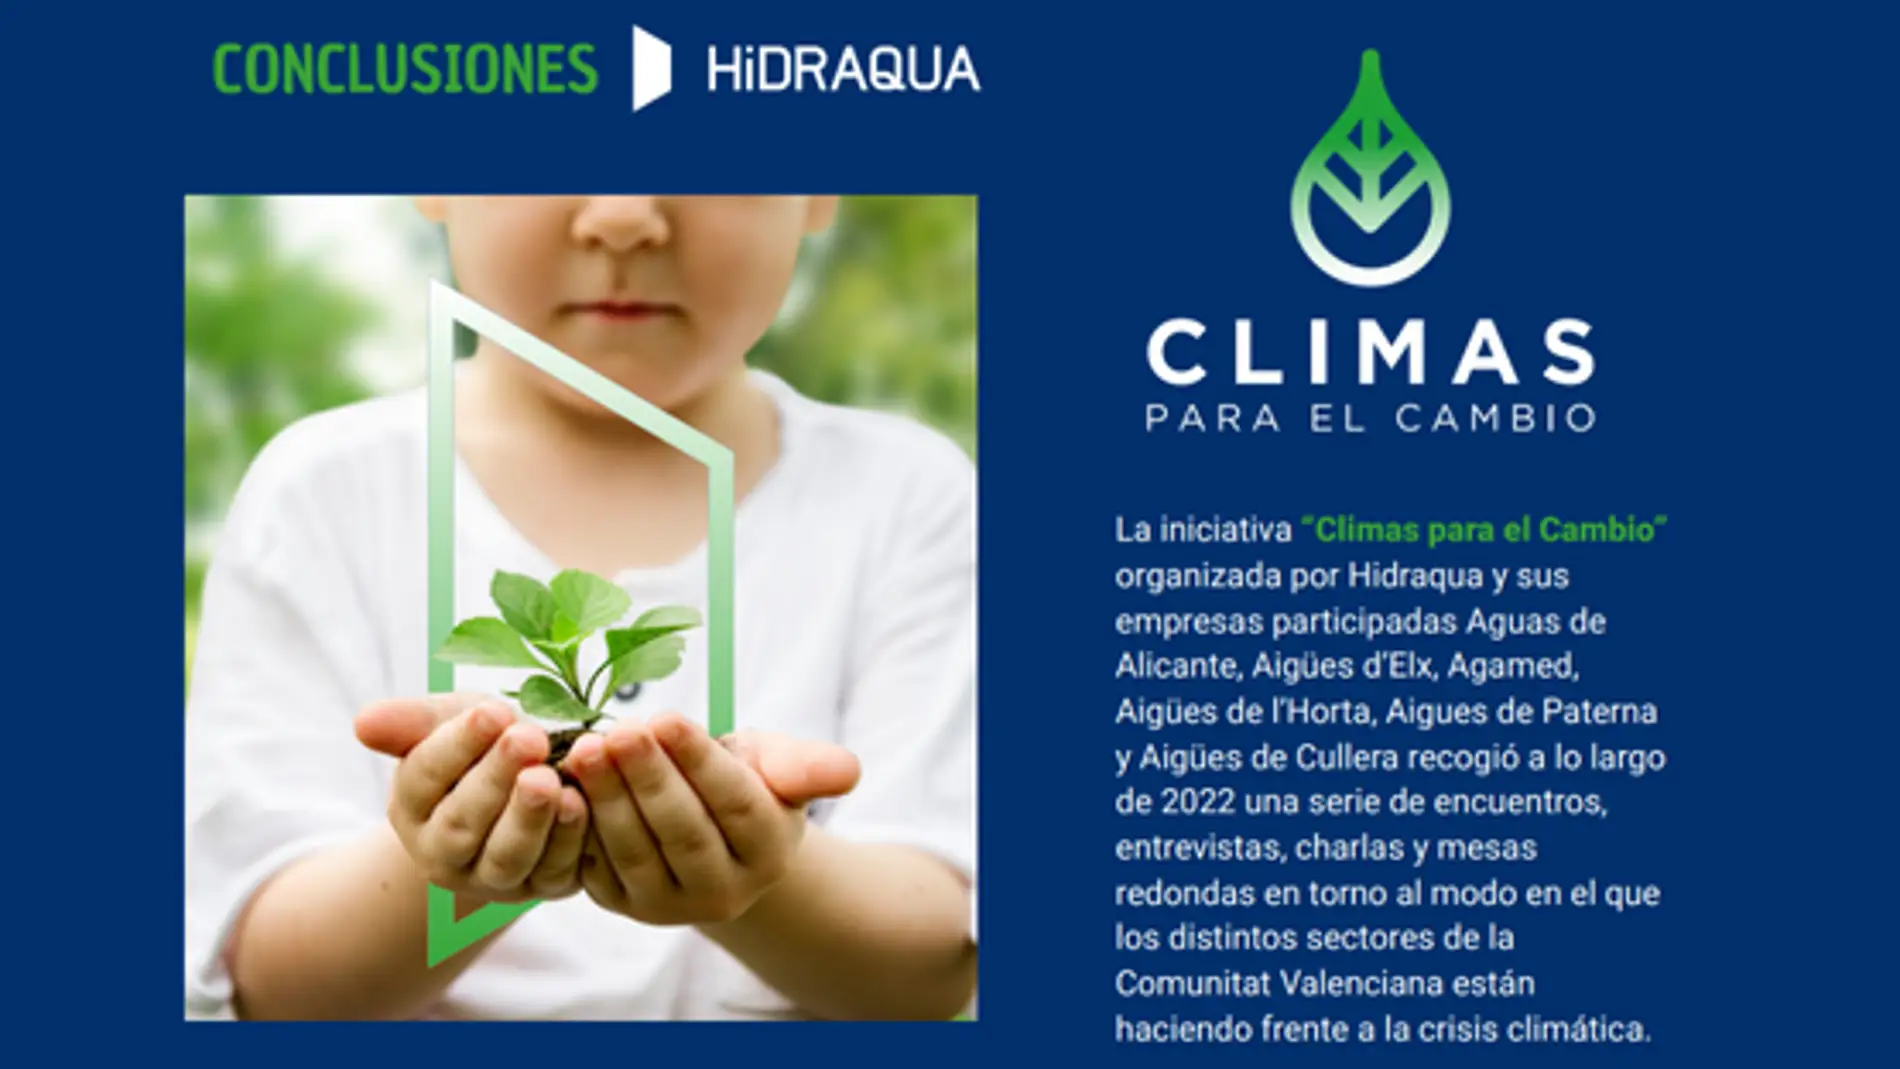 Hidraqua presenta las conclusiones de su ciclo de conferencias “Climas para el cambio” 